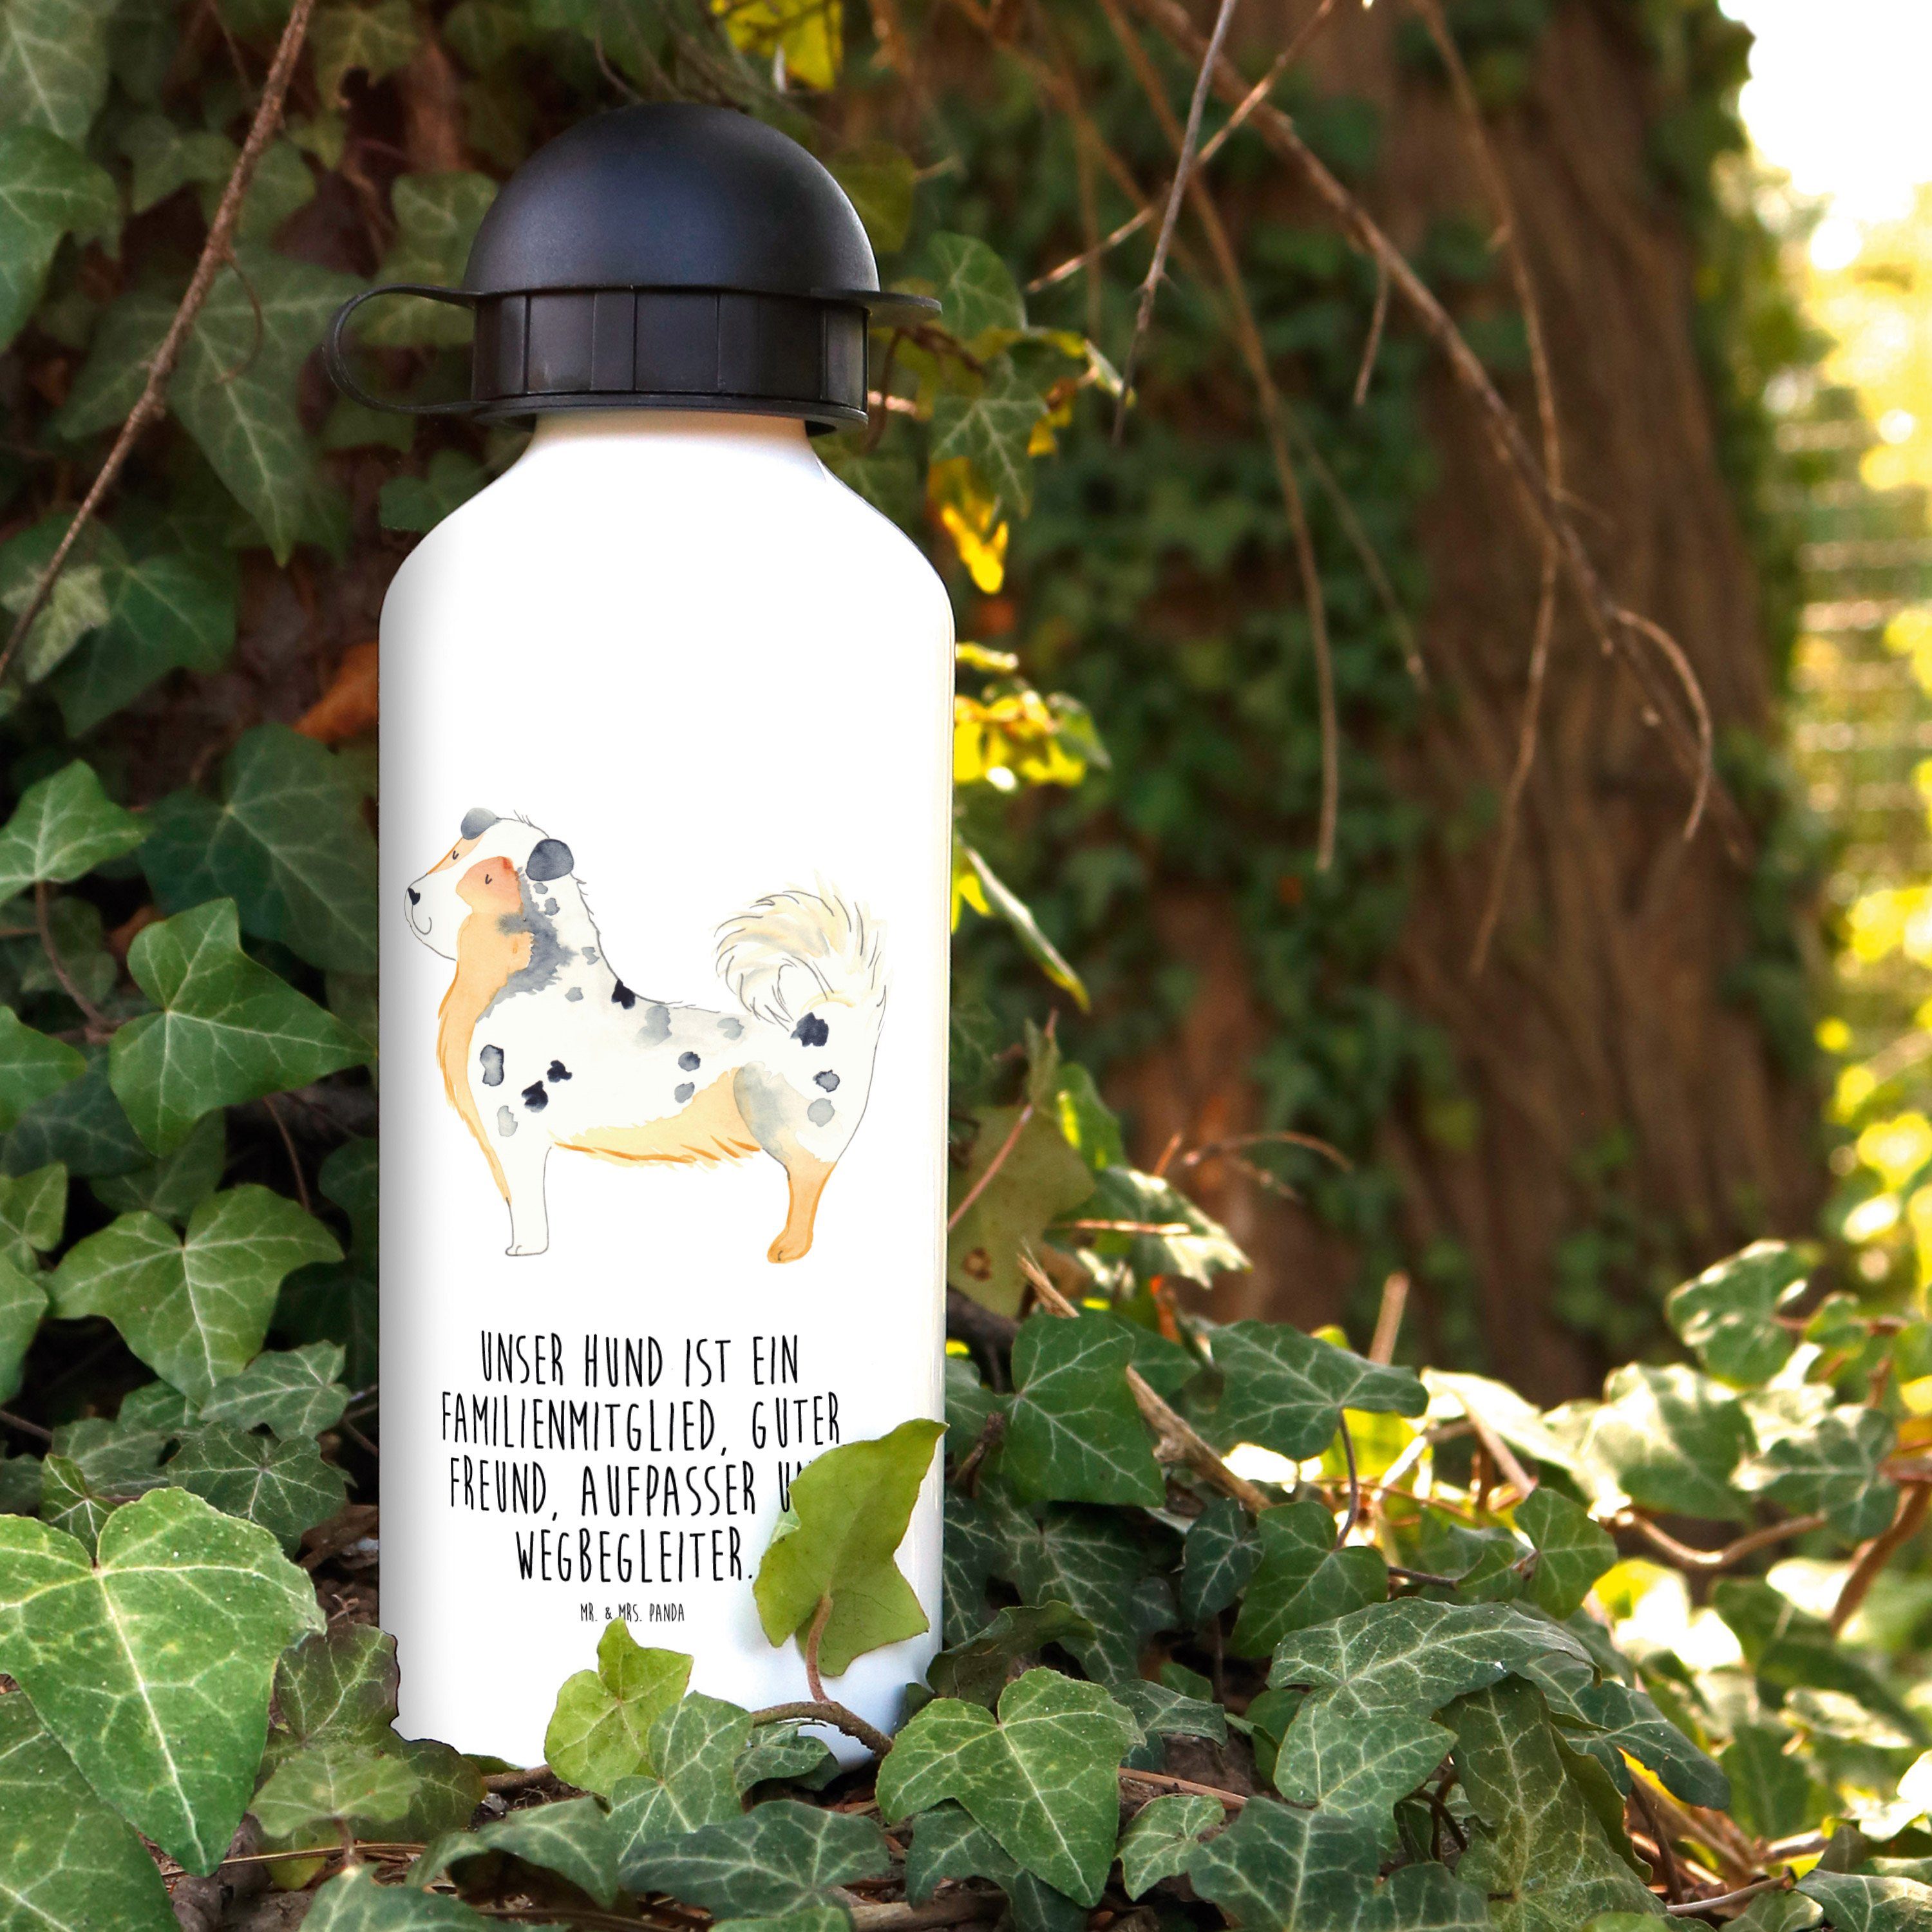 Mr. & Mrs. Tierliebhaber, Shepherd Fl Weiß Panda Australien Kindergarten Trinkflasche - Geschenk, 